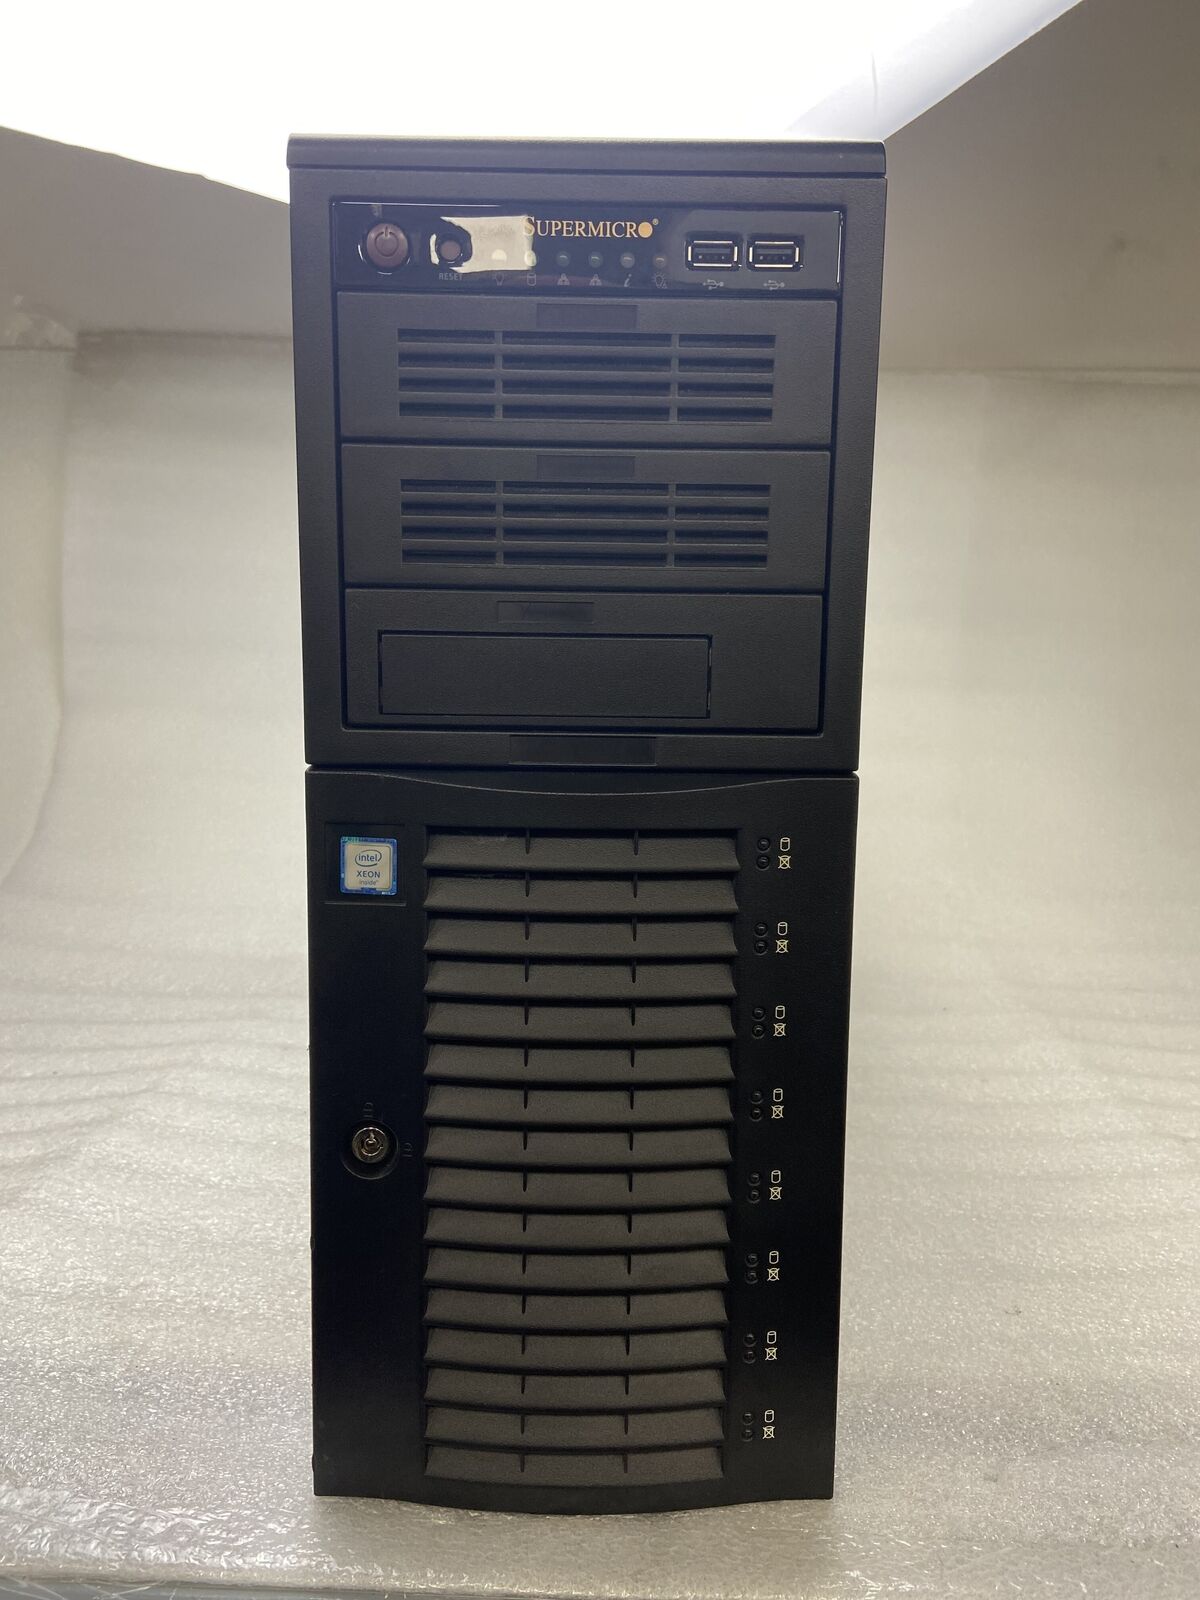 Supermicro Super Server Tower Xeon E5-2620 v4 2.10Ghz 64GB RAM NO HDD NO OS